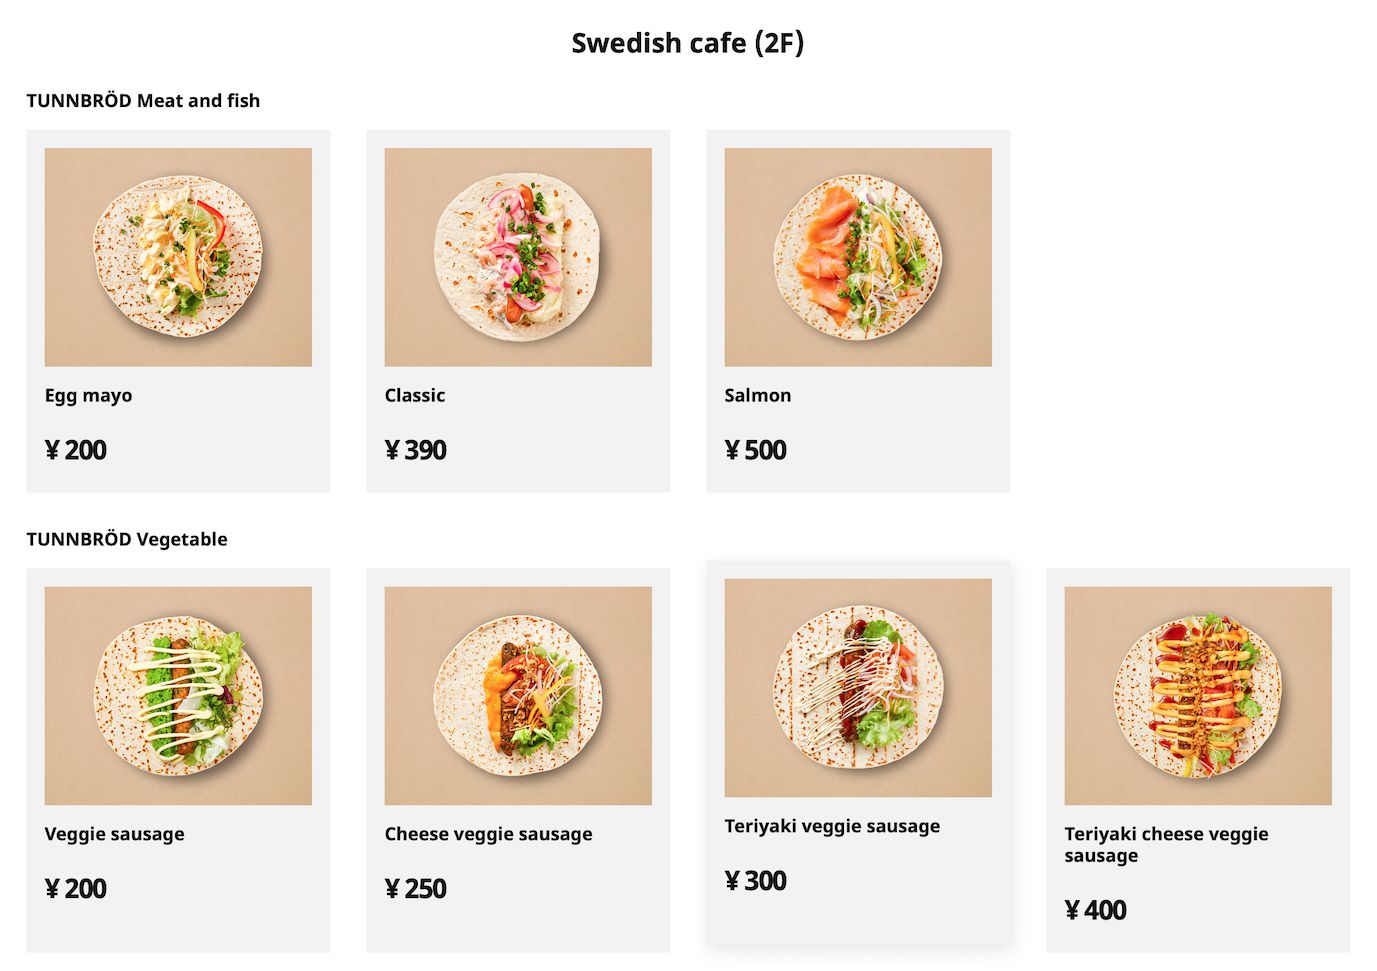 瑞典传统美食Flatbread（与玉米饼皮相似），宜家日本加入了新的食材，制作出成荤食、素食和甜点。 -截图自宜家日本官网-